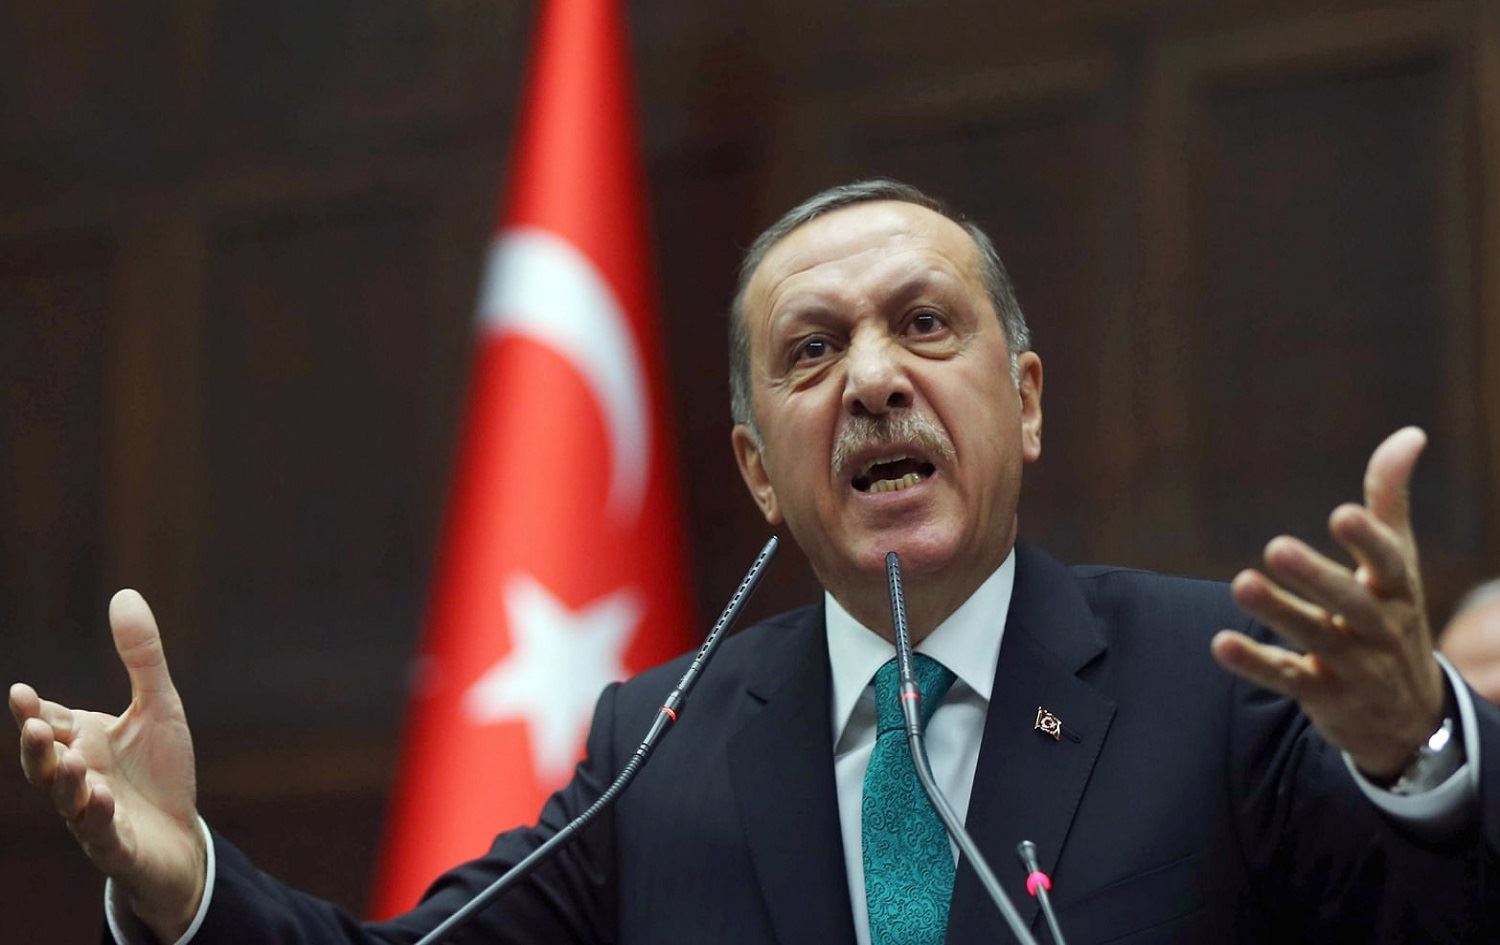 Τούρκος αναλυτής: «Ο Ρ.Τ.Ερντογάν δεν θέλει πόλεμο με την Ελλάδα – Με διαπραγματεύσεις θα κερδίσει όσα θέλει»